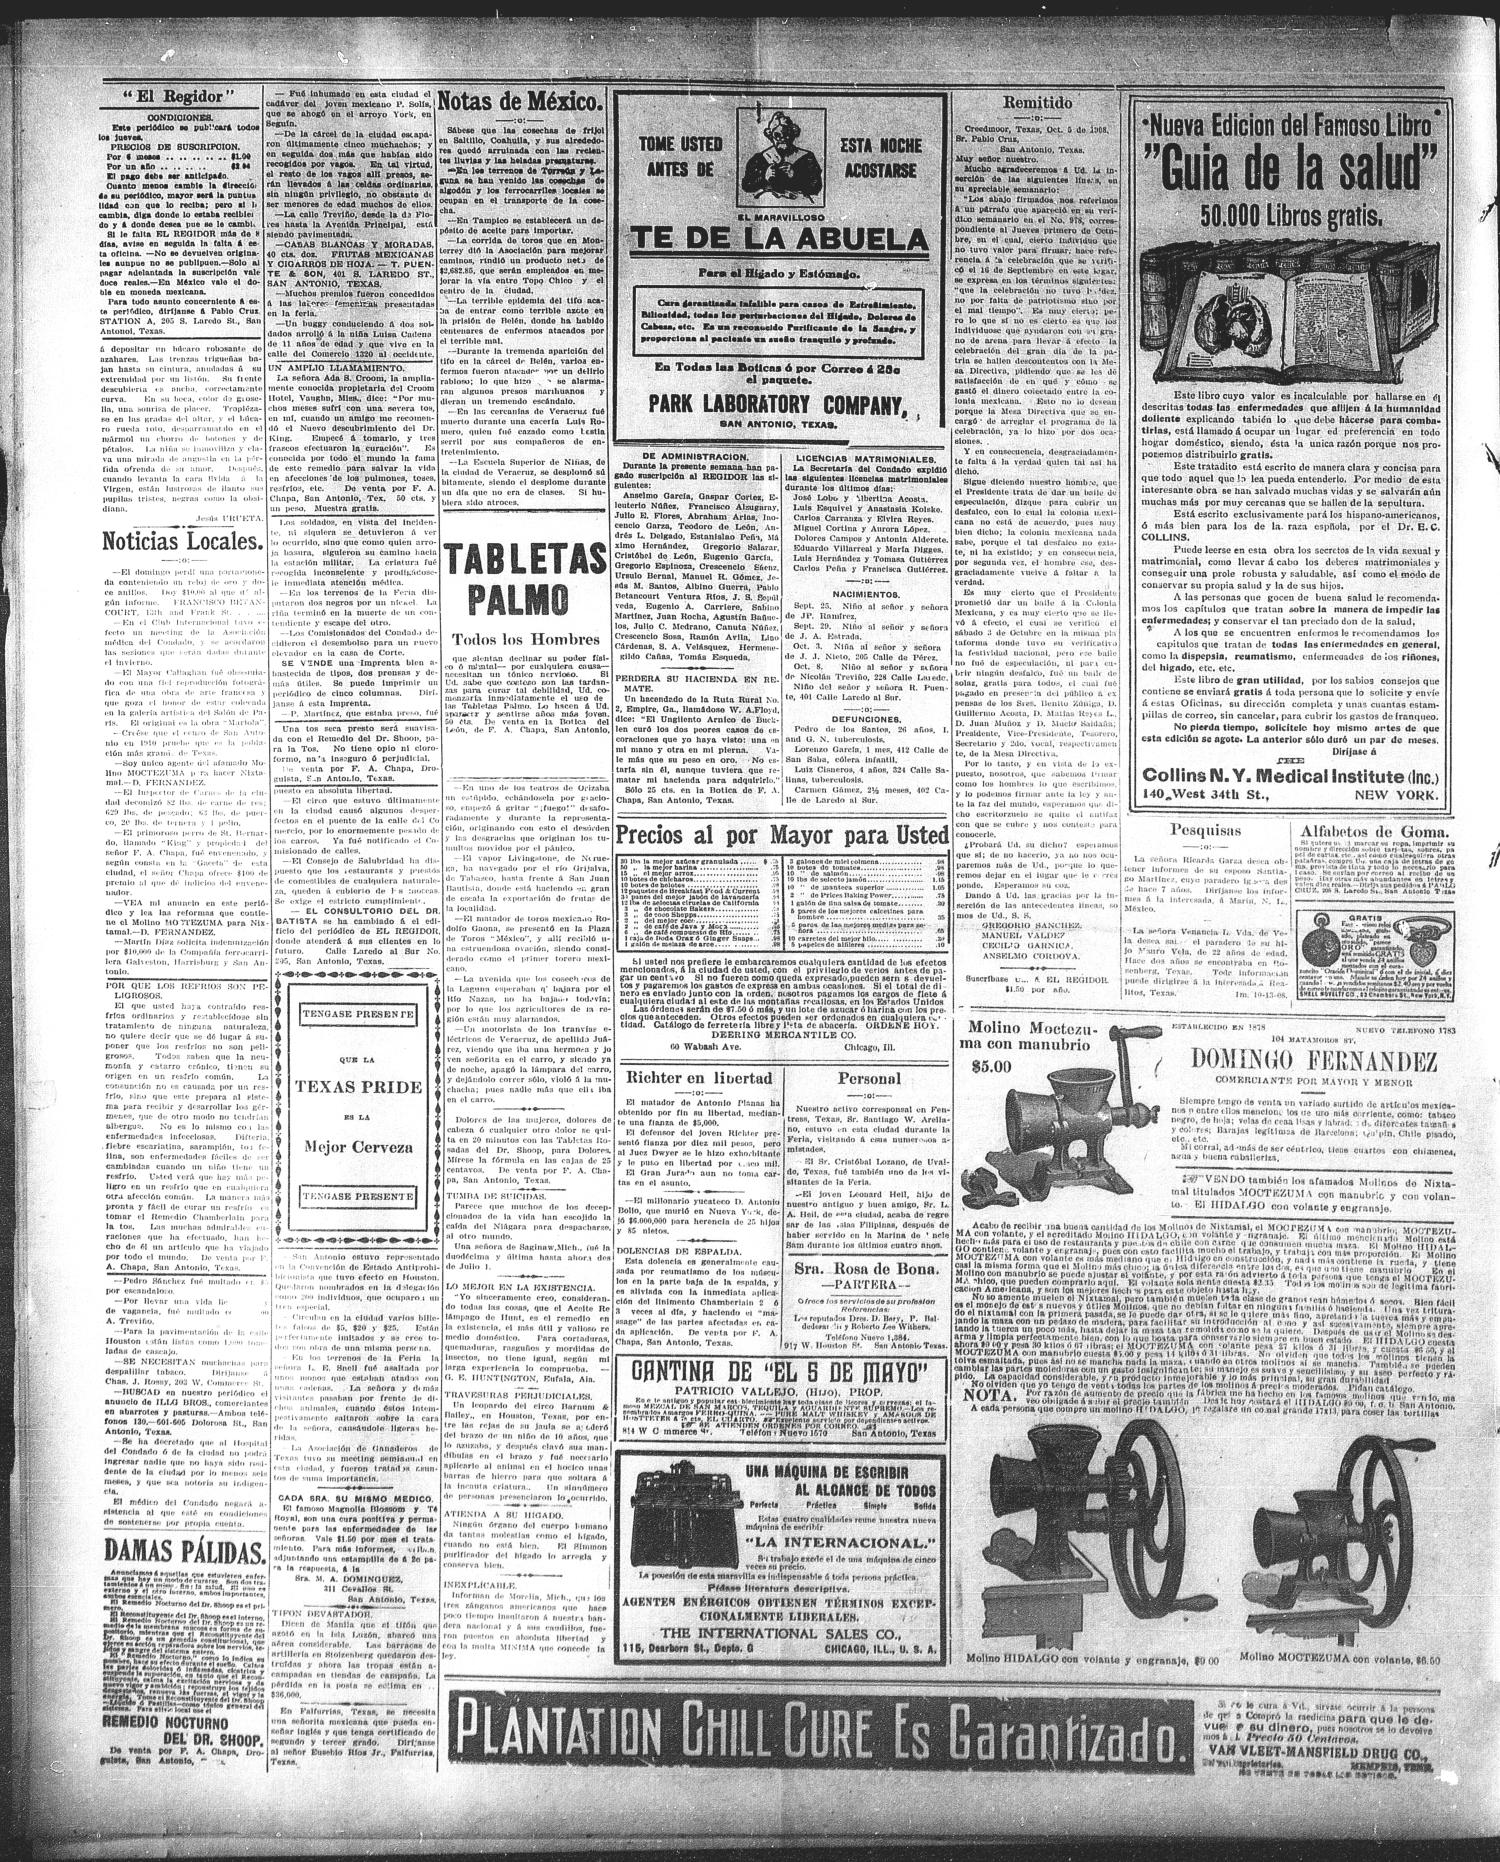 El Regidor San Antonio Tex Vol 21 No 980 Ed 1 Thursday October 15 1908 Page 2 Of 4 The Portal To Texas History